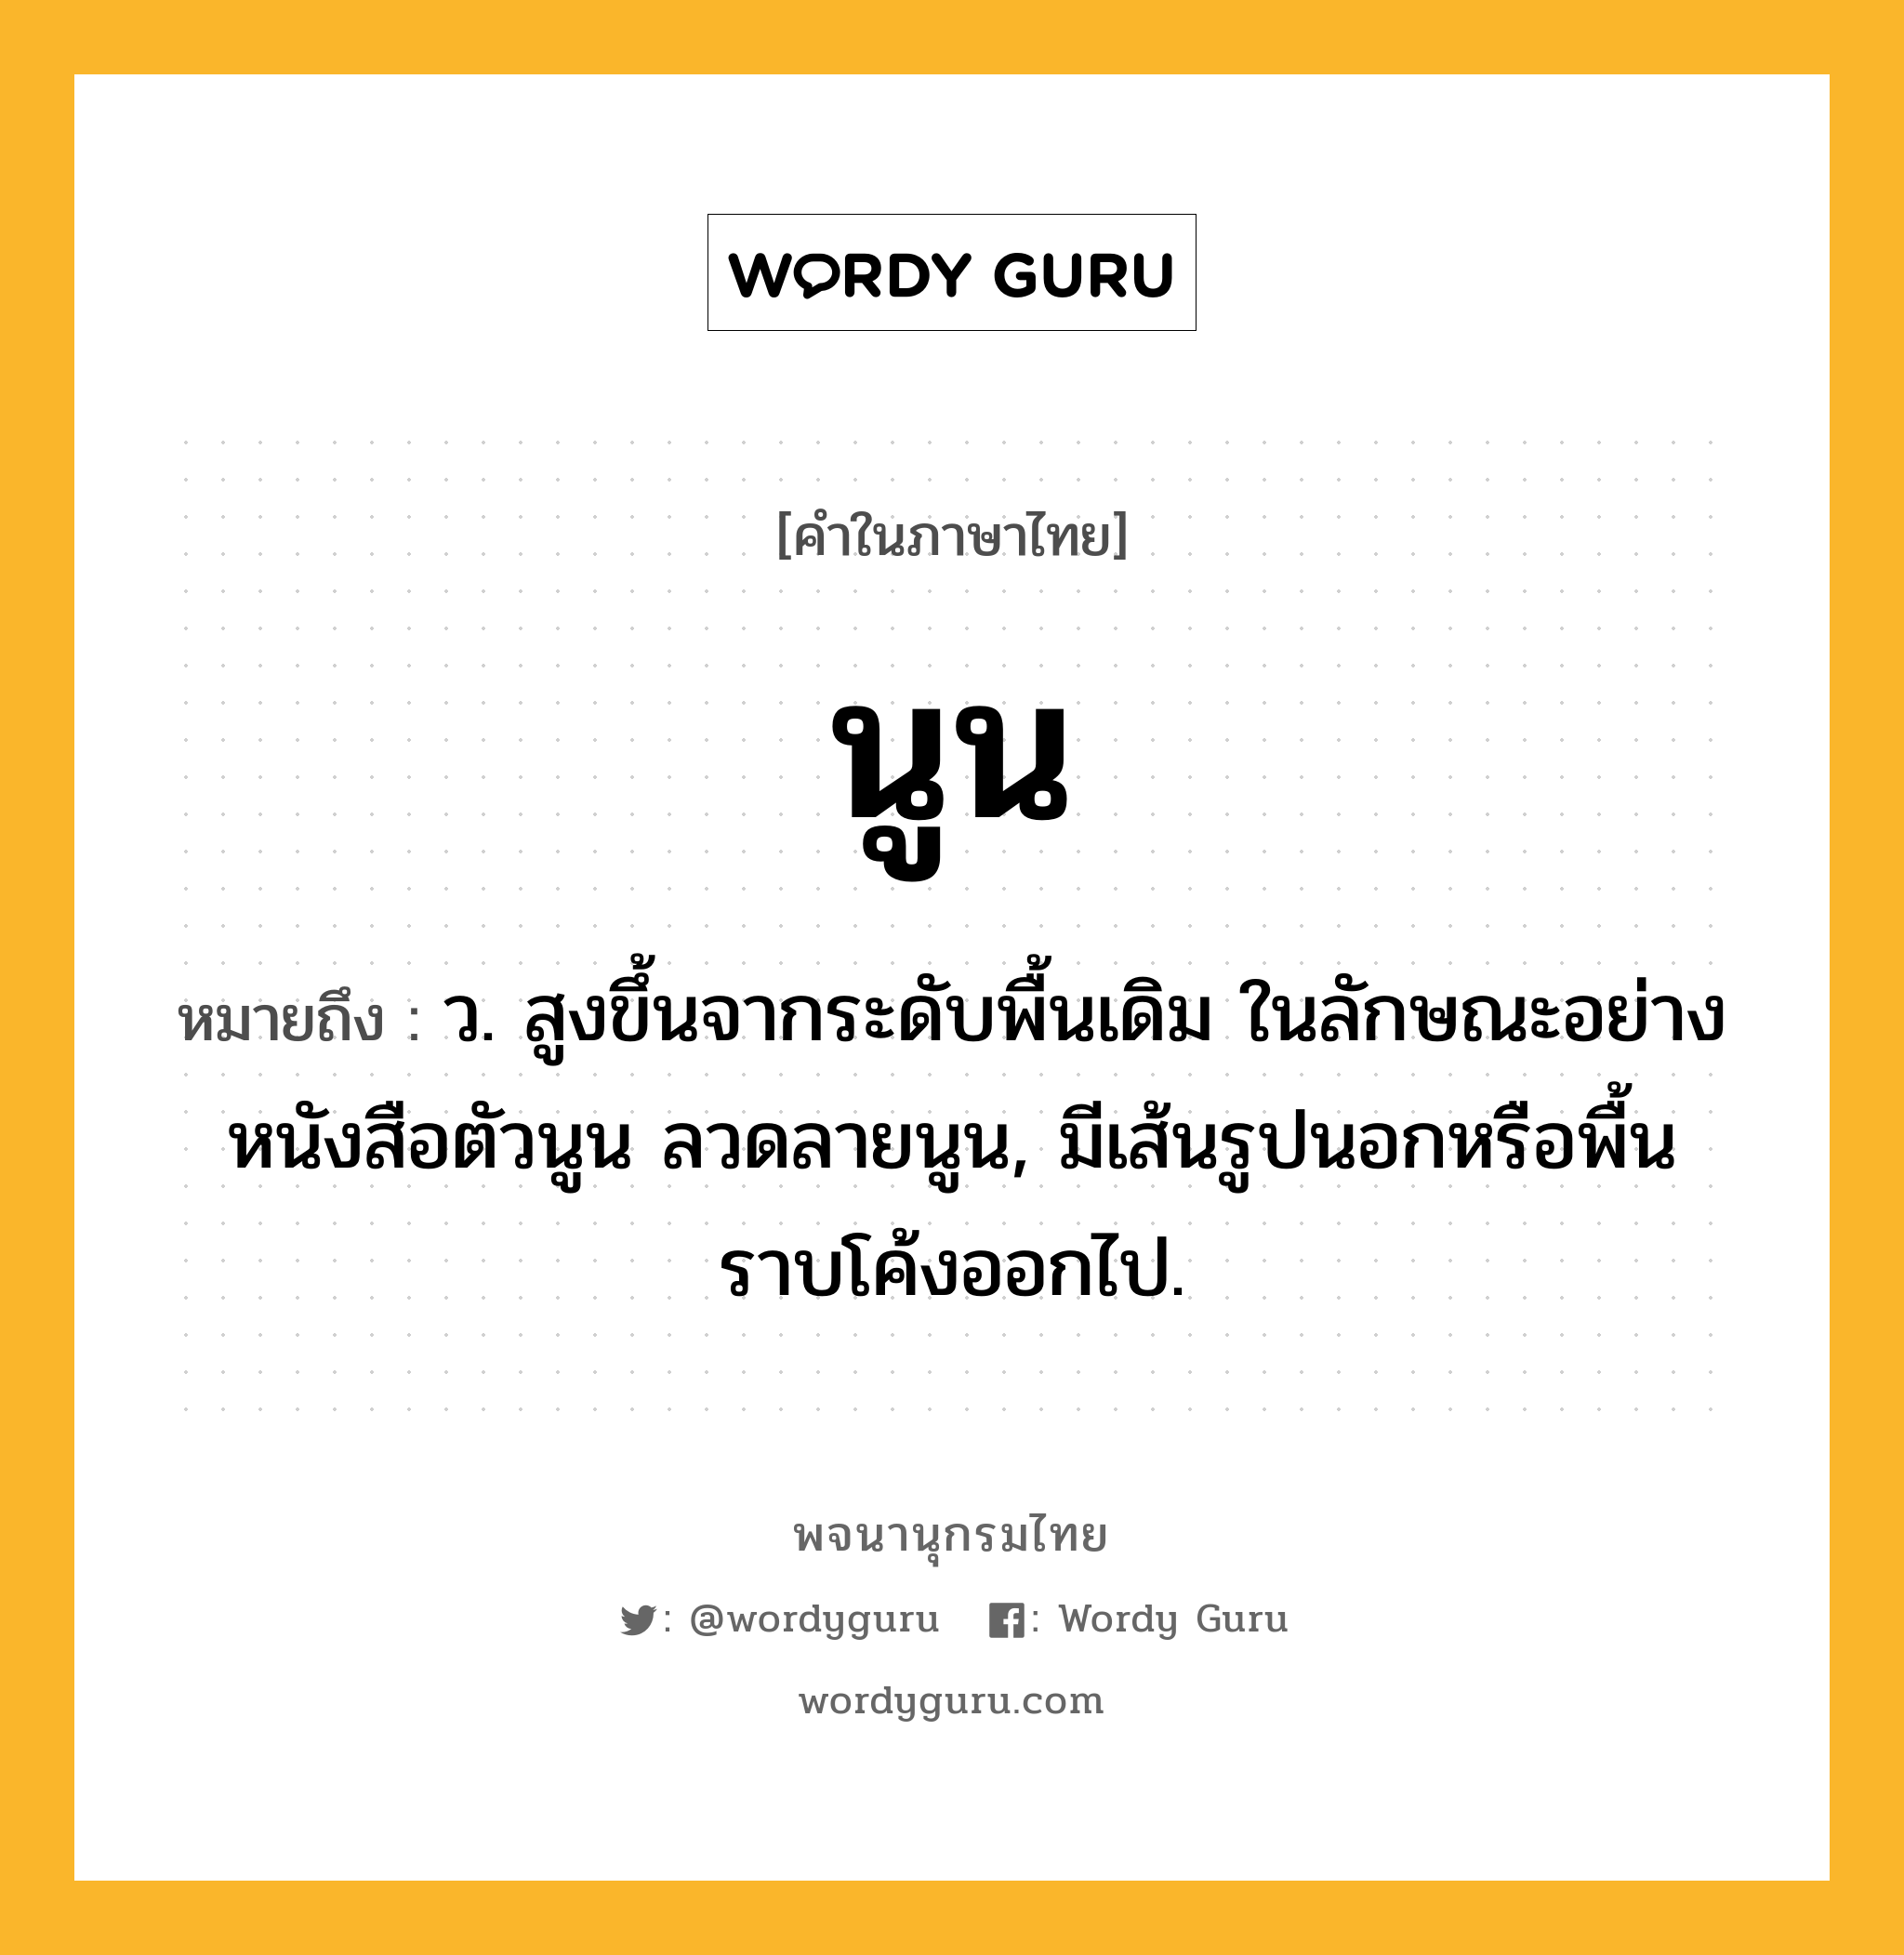 นูน หมายถึงอะไร?, คำในภาษาไทย นูน หมายถึง ว. สูงขึ้นจากระดับพื้นเดิม ในลักษณะอย่างหนังสือตัวนูน ลวดลายนูน, มีเส้นรูปนอกหรือพื้นราบโค้งออกไป.